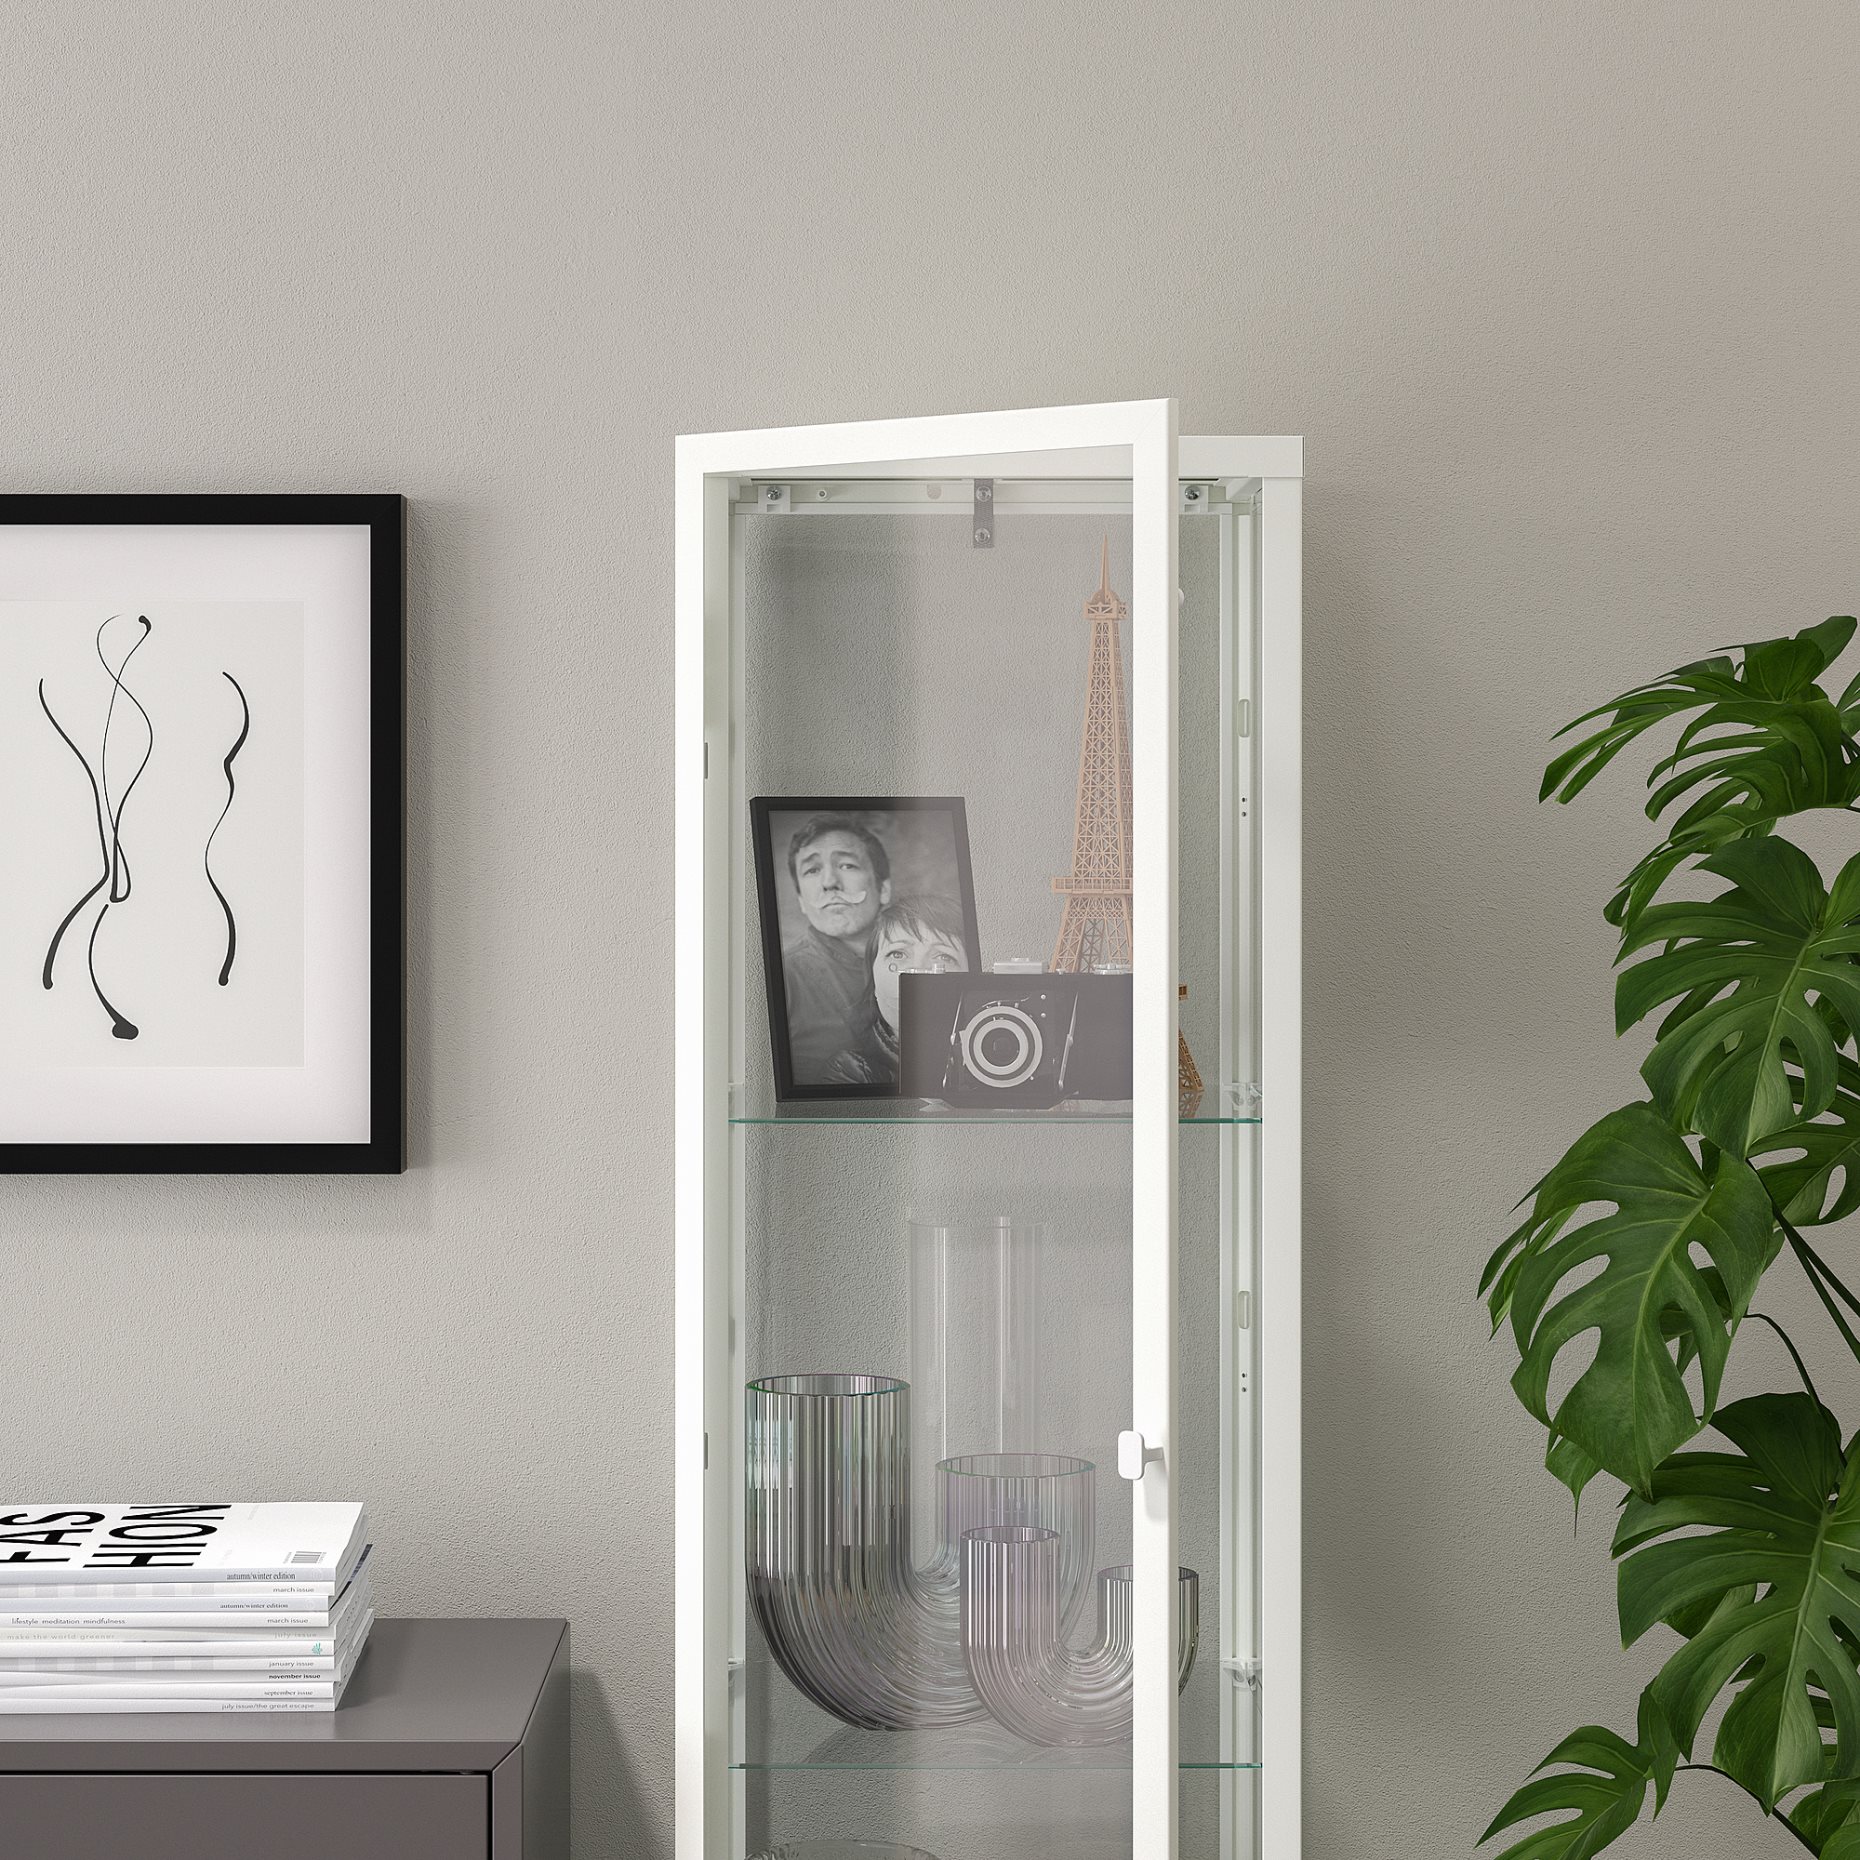 BLÅLIDEN, glass-door cabinet, 35x32x151 cm, 005.012.43